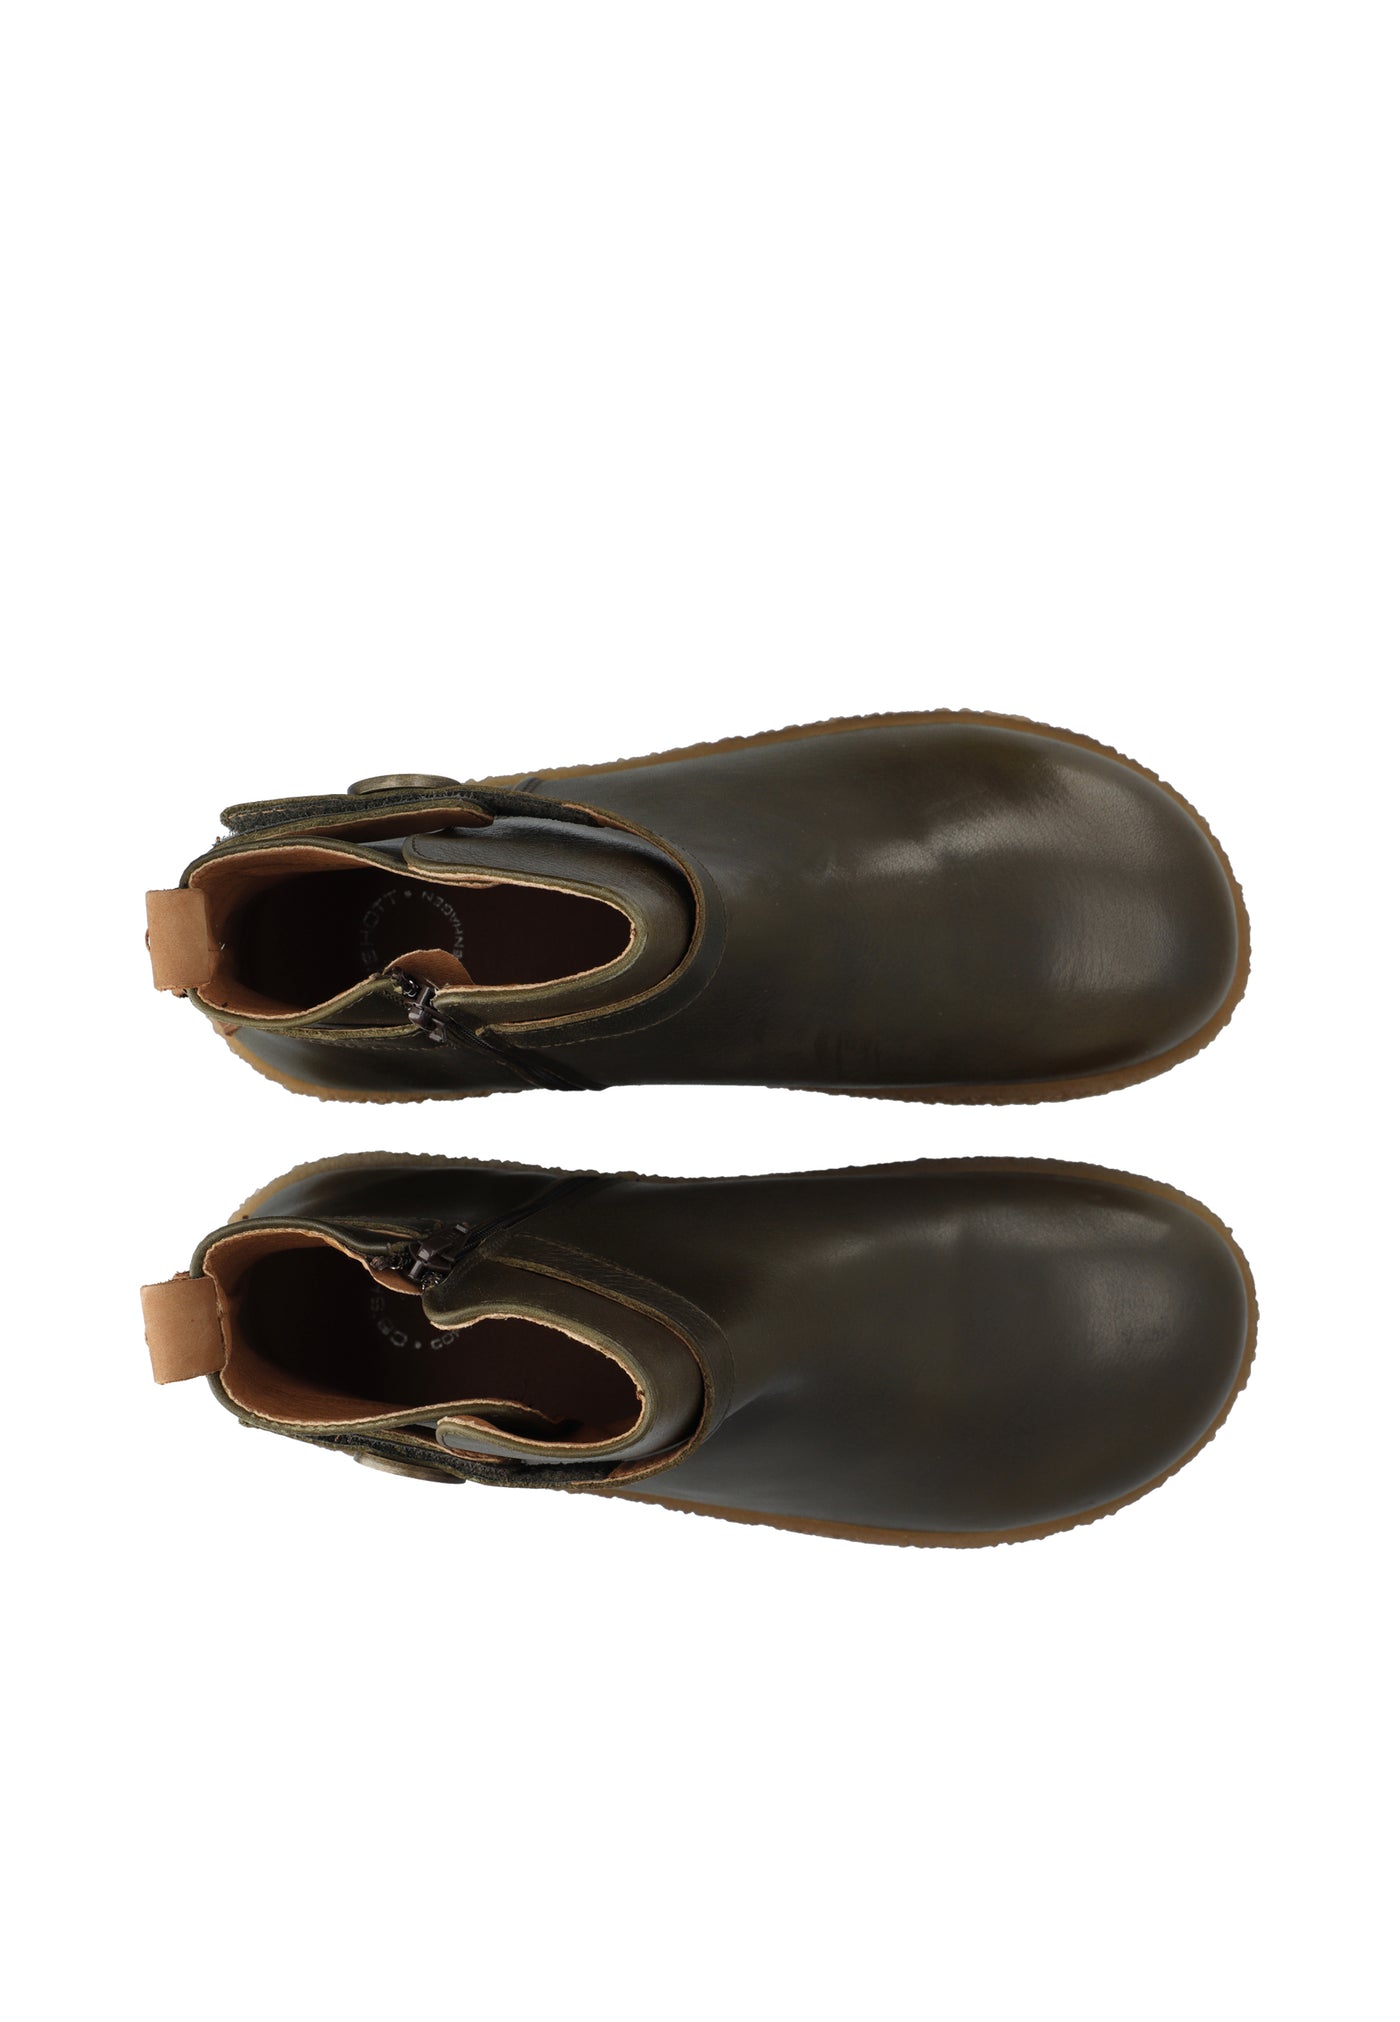 CASHOTT CASDAGMAR Zip boot Pull up leather Zip Boot Olive